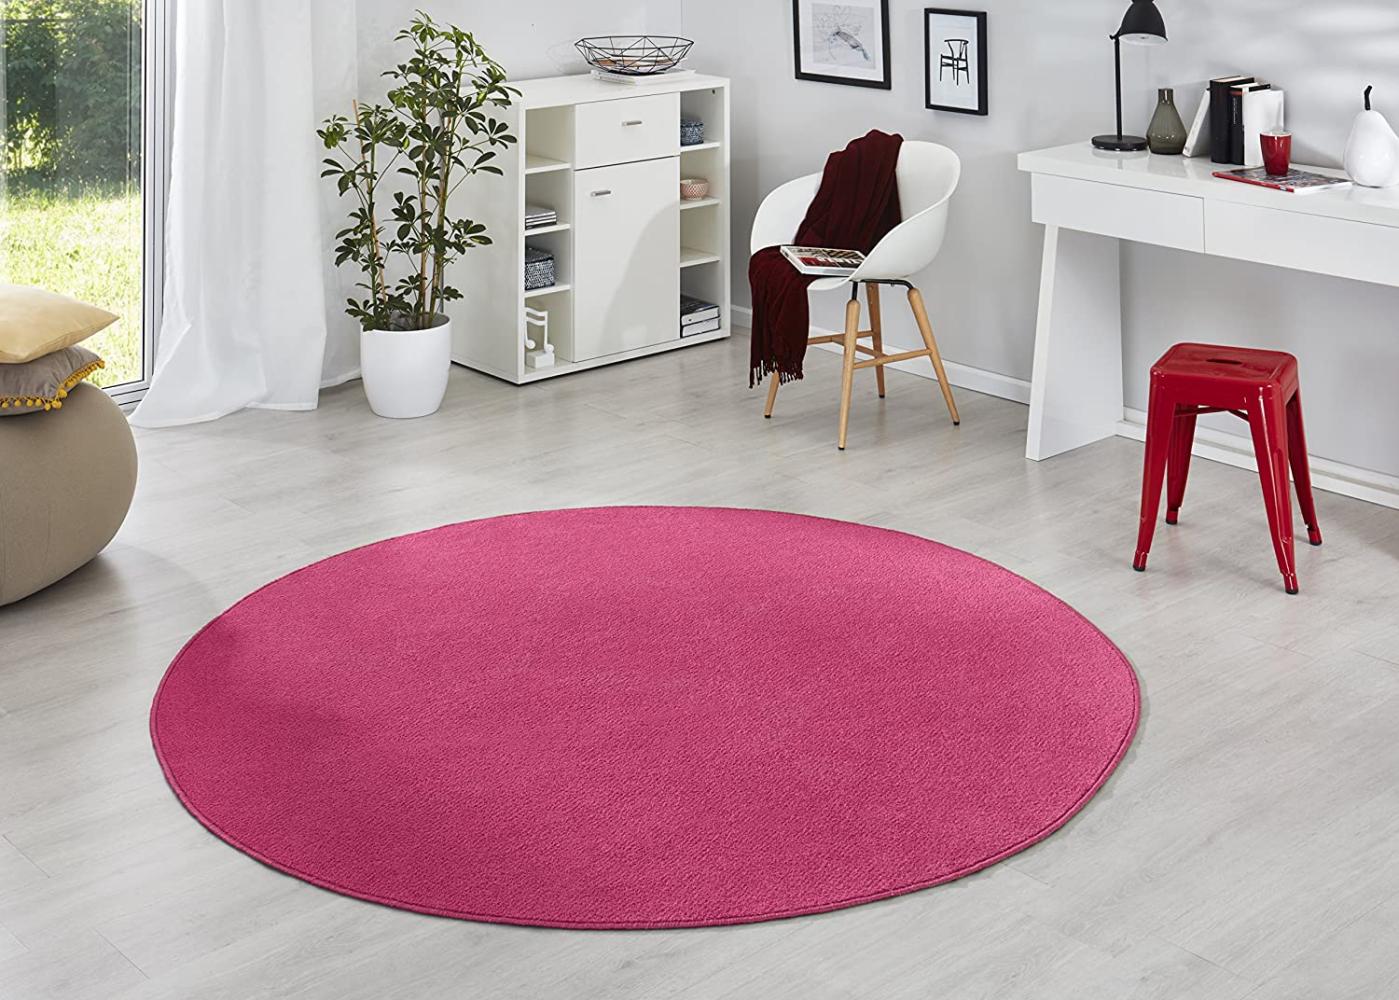 Runder Kurzflor Teppich Uni Fancy rund - Pink - 133 cm Durchmesser Bild 1